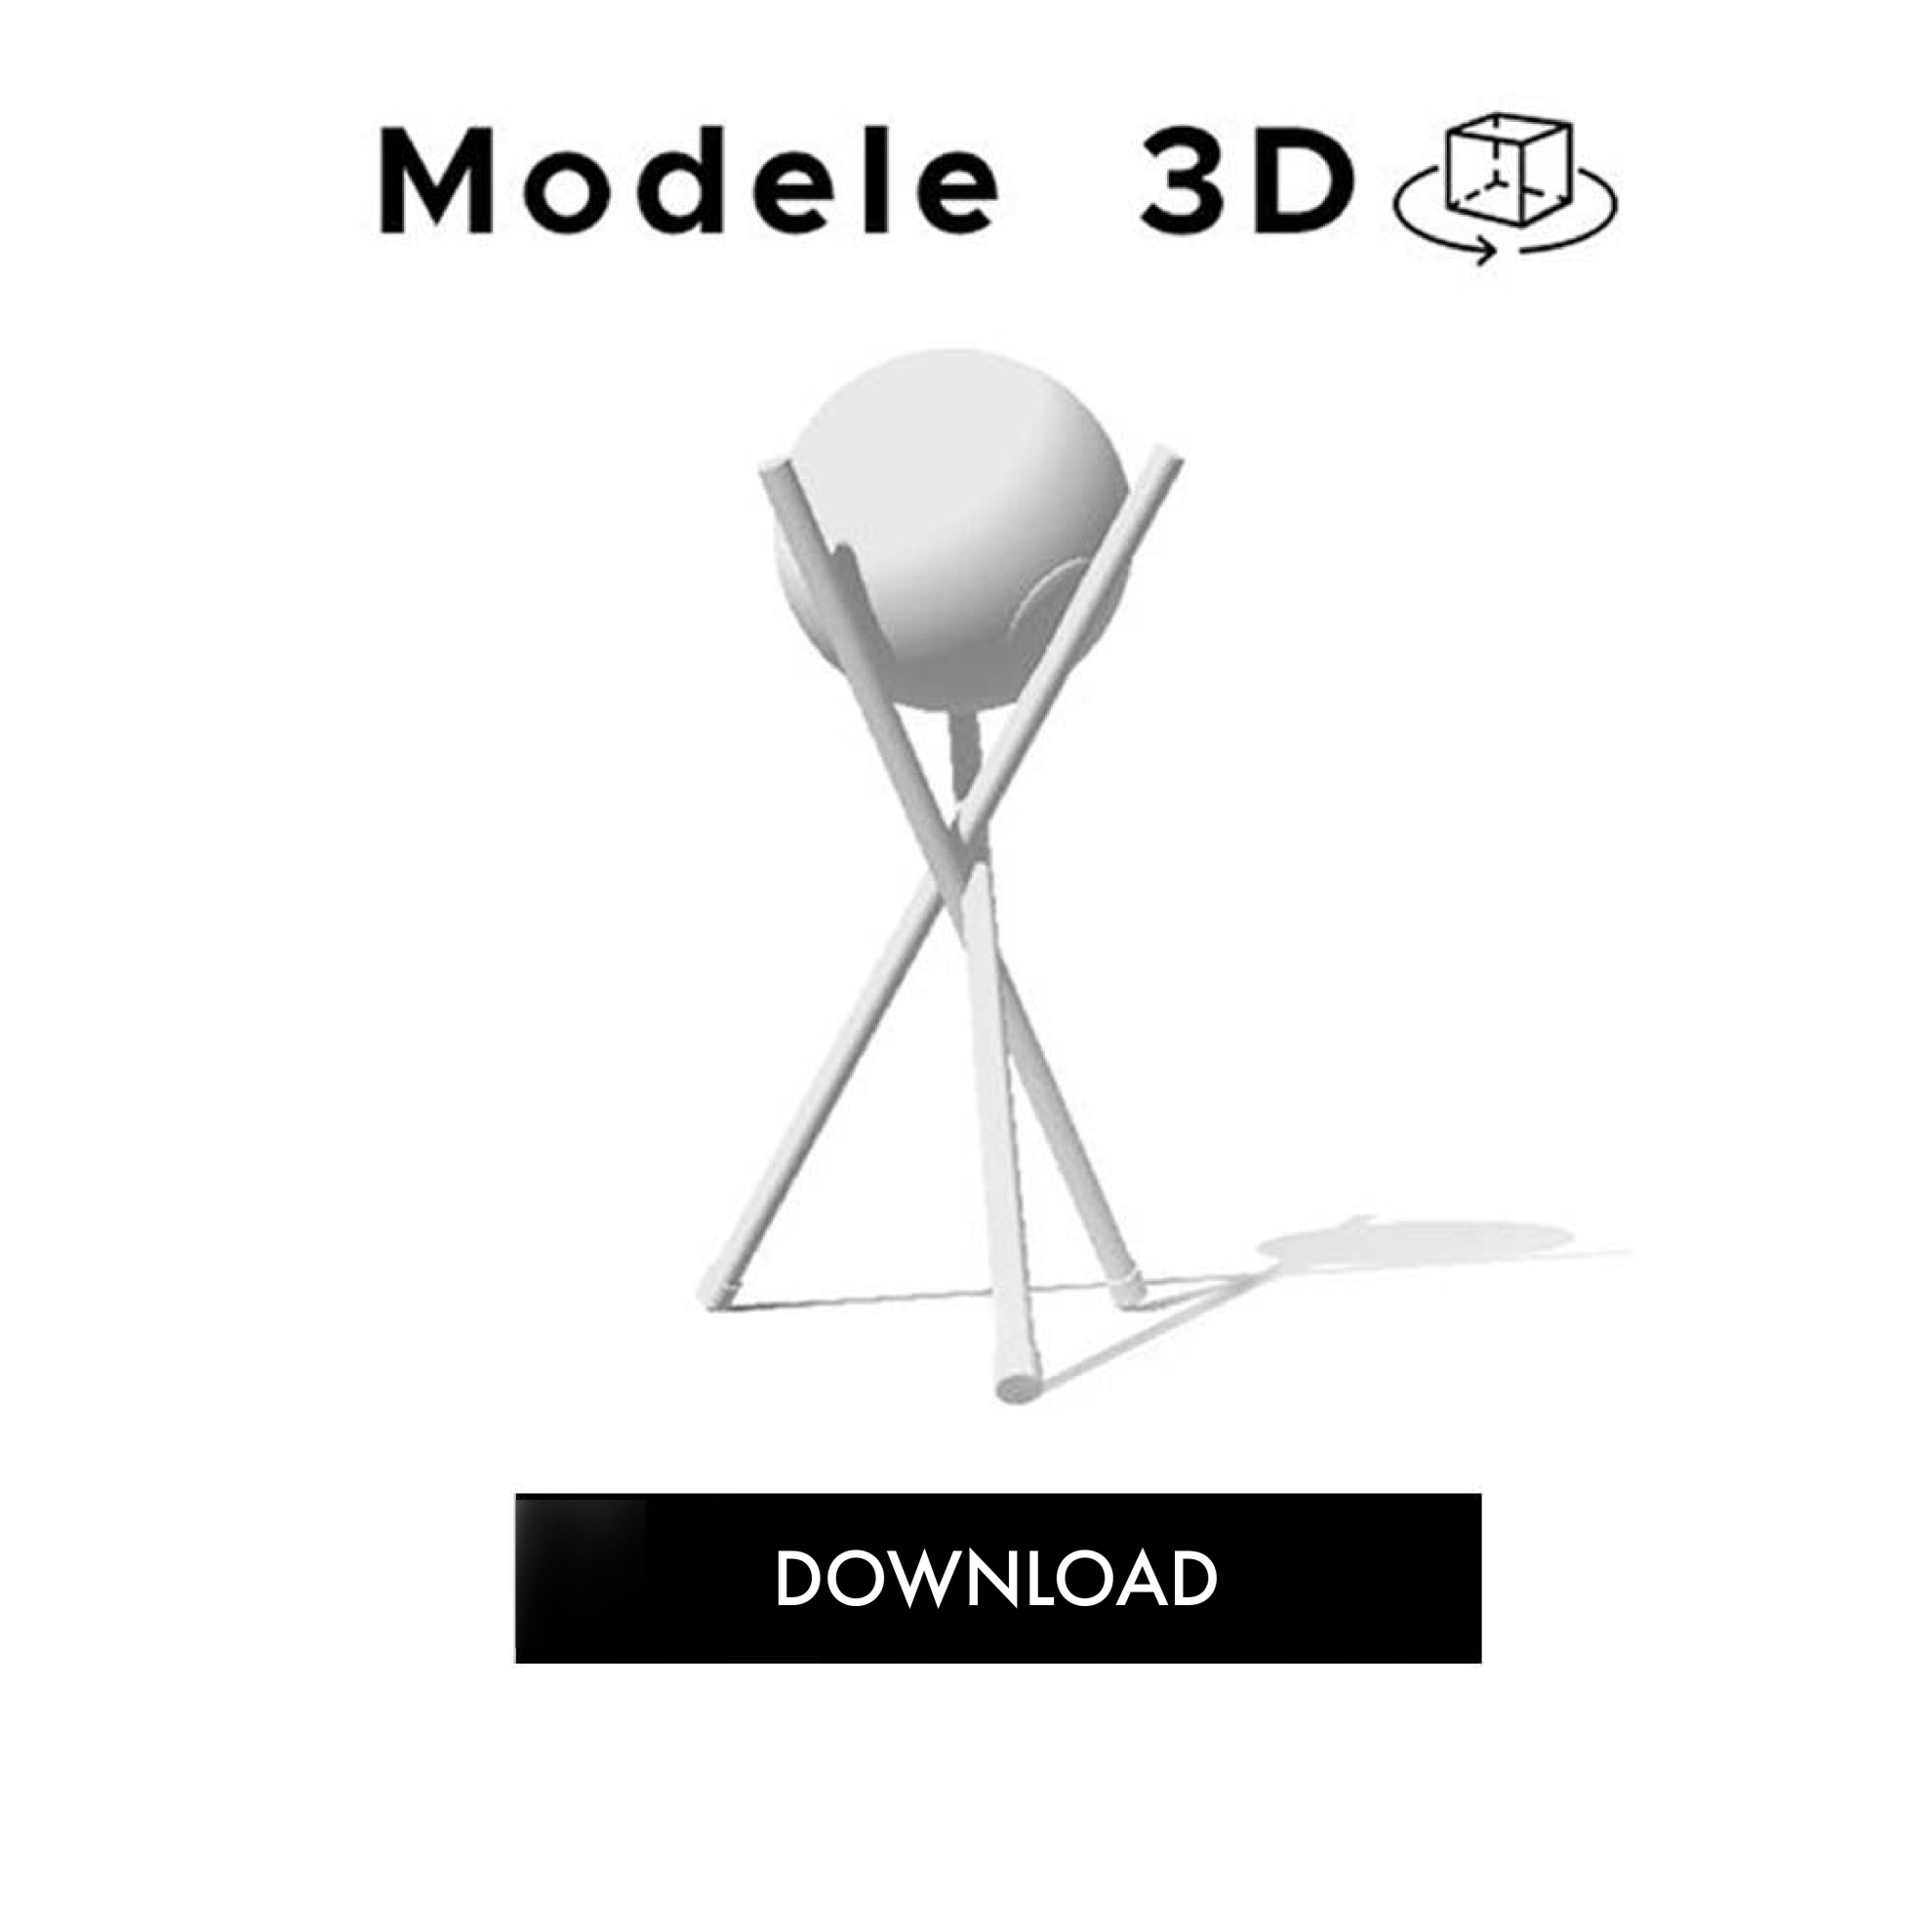 3D Models